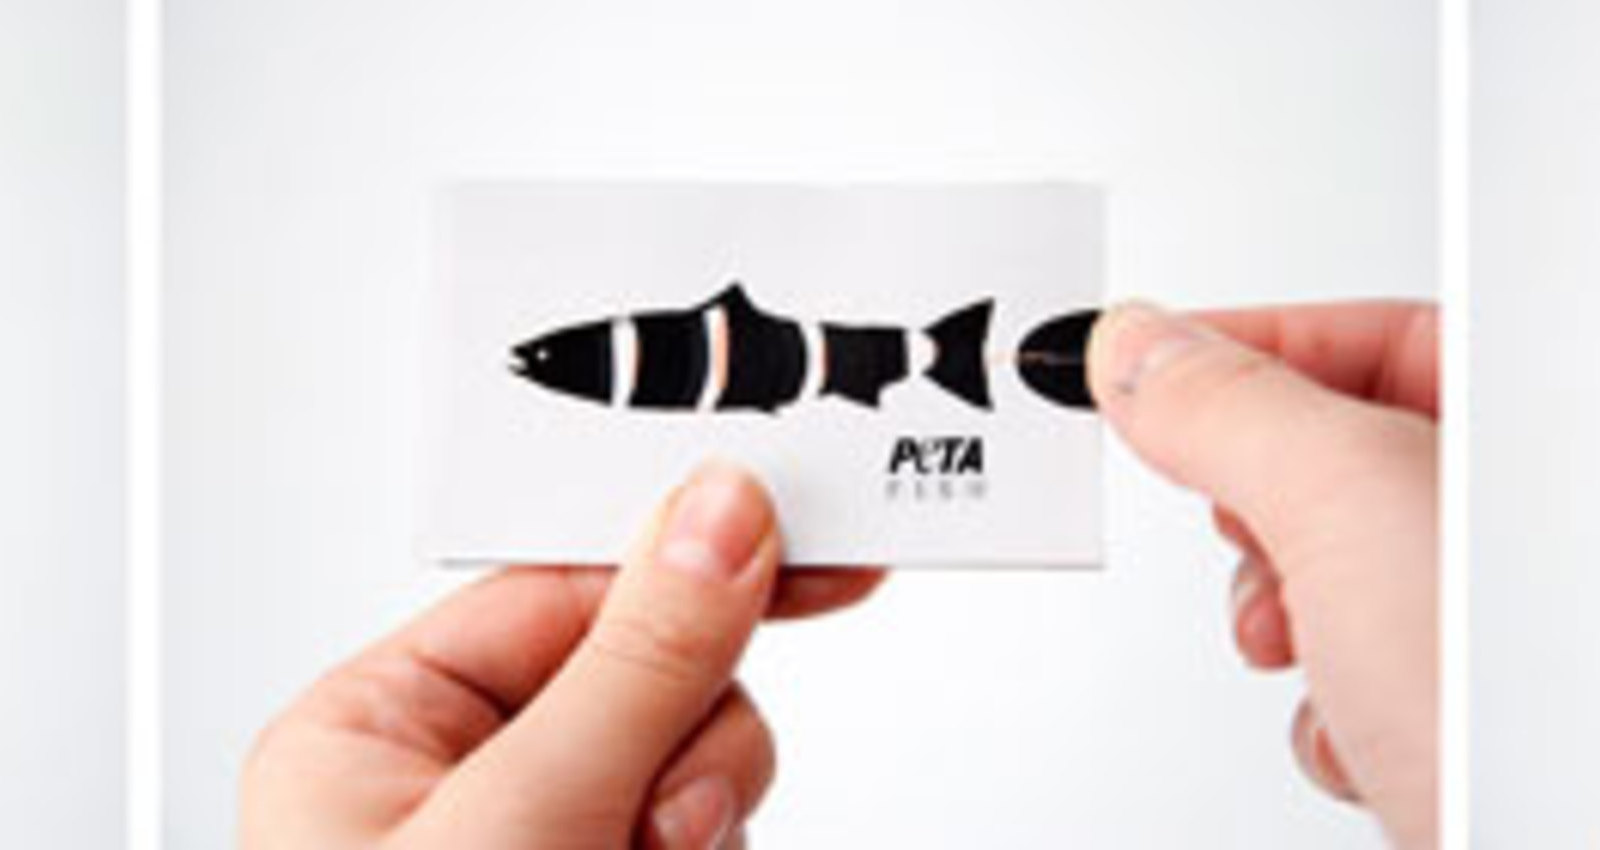 PETA Fish Corporate Identity